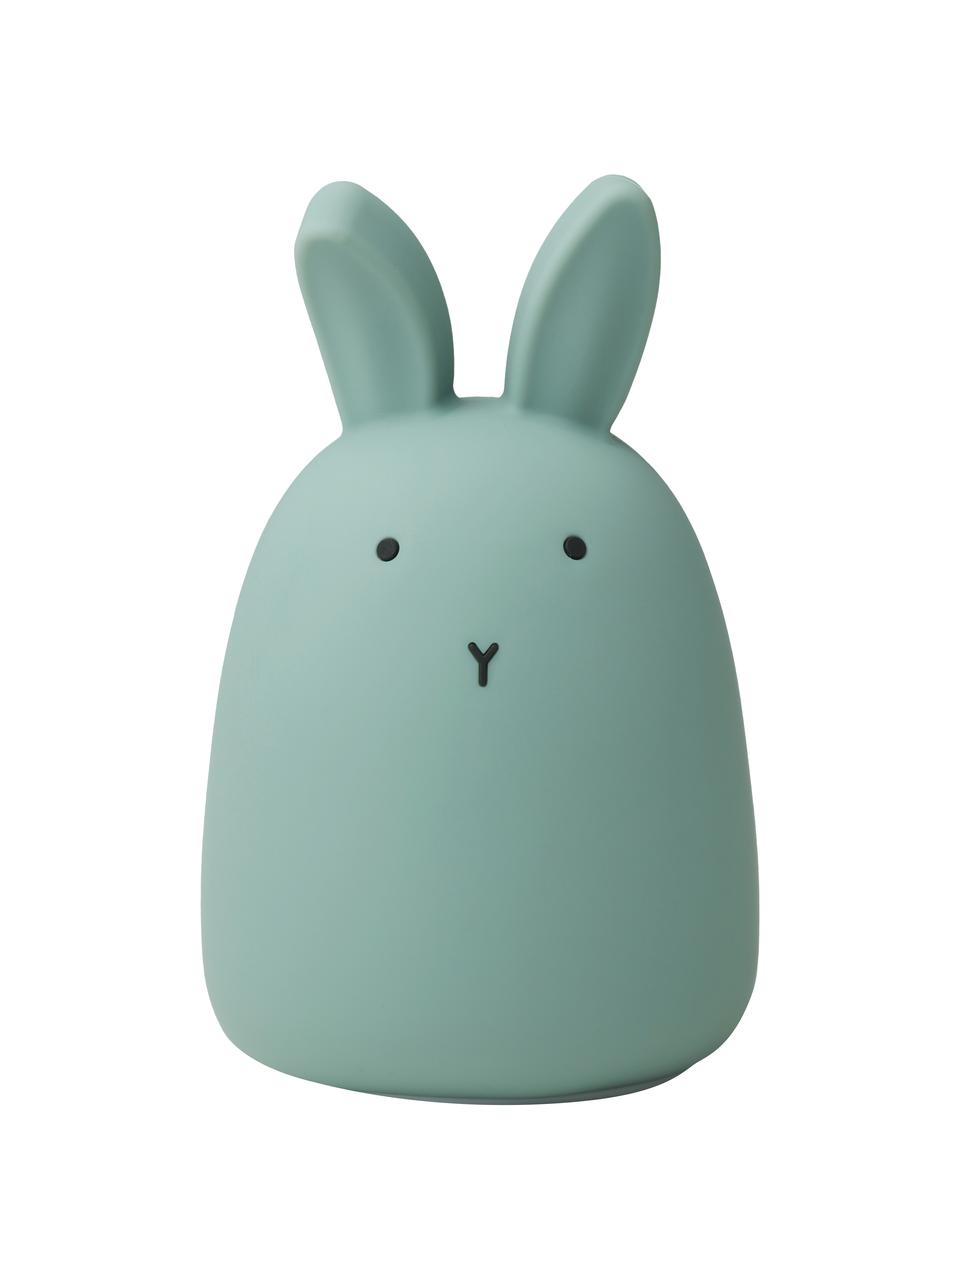 Décoration lumineuse LED enfant Winston Rabbit, 100 % silicone, Vert, Ø 11 cm x haut. 14 cm